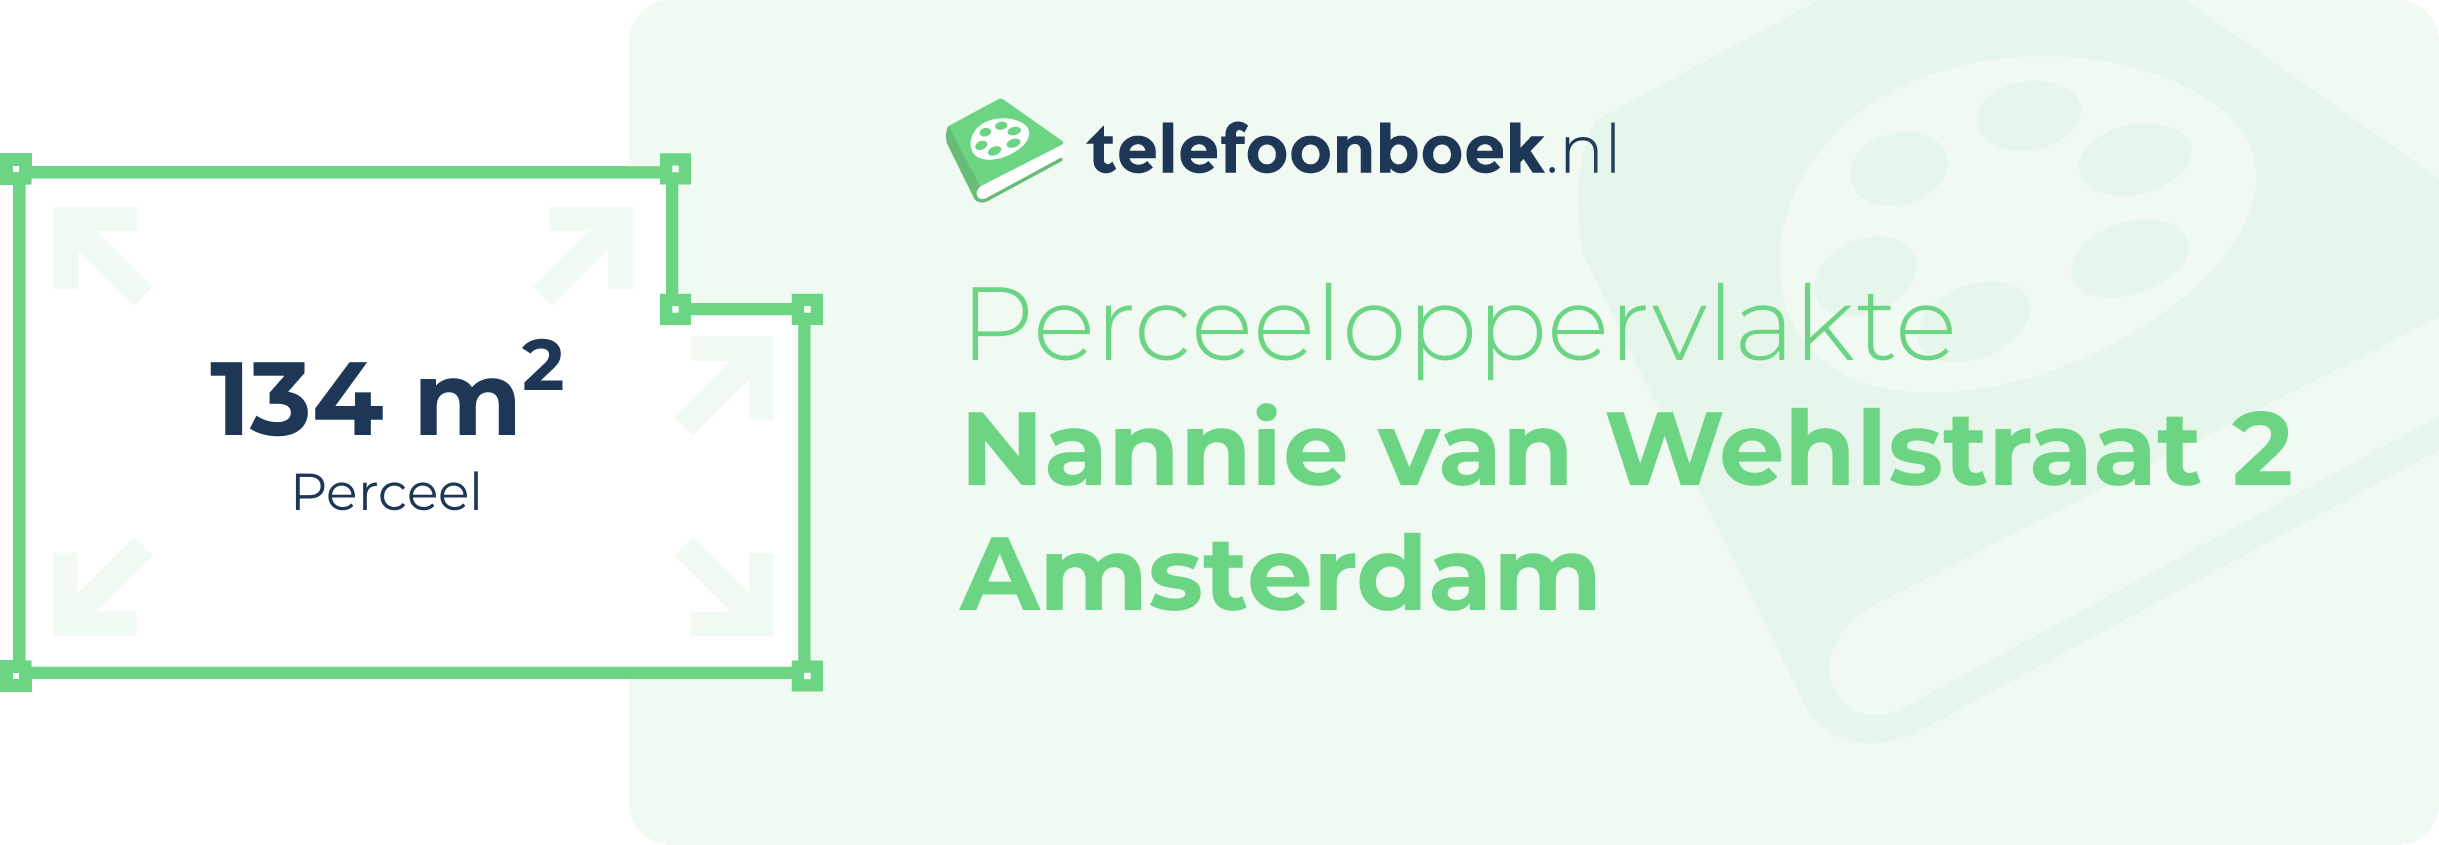 Perceeloppervlakte Nannie Van Wehlstraat 2 Amsterdam